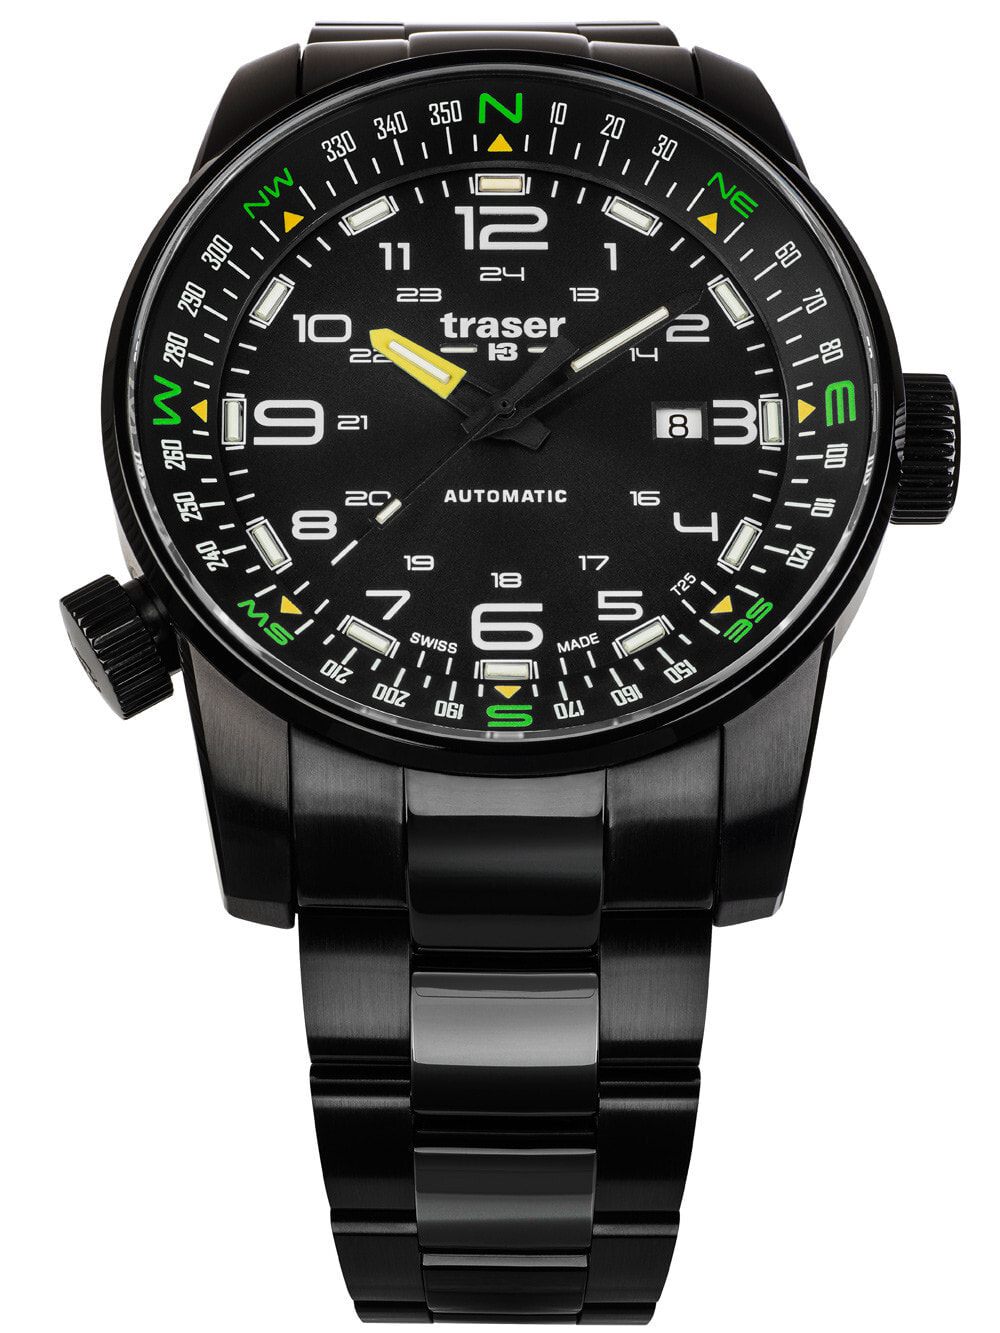 Мужские наручные часы с черным браслетом Traser H3 109522 P68 Pathfinder automatic 46mm 10ATM